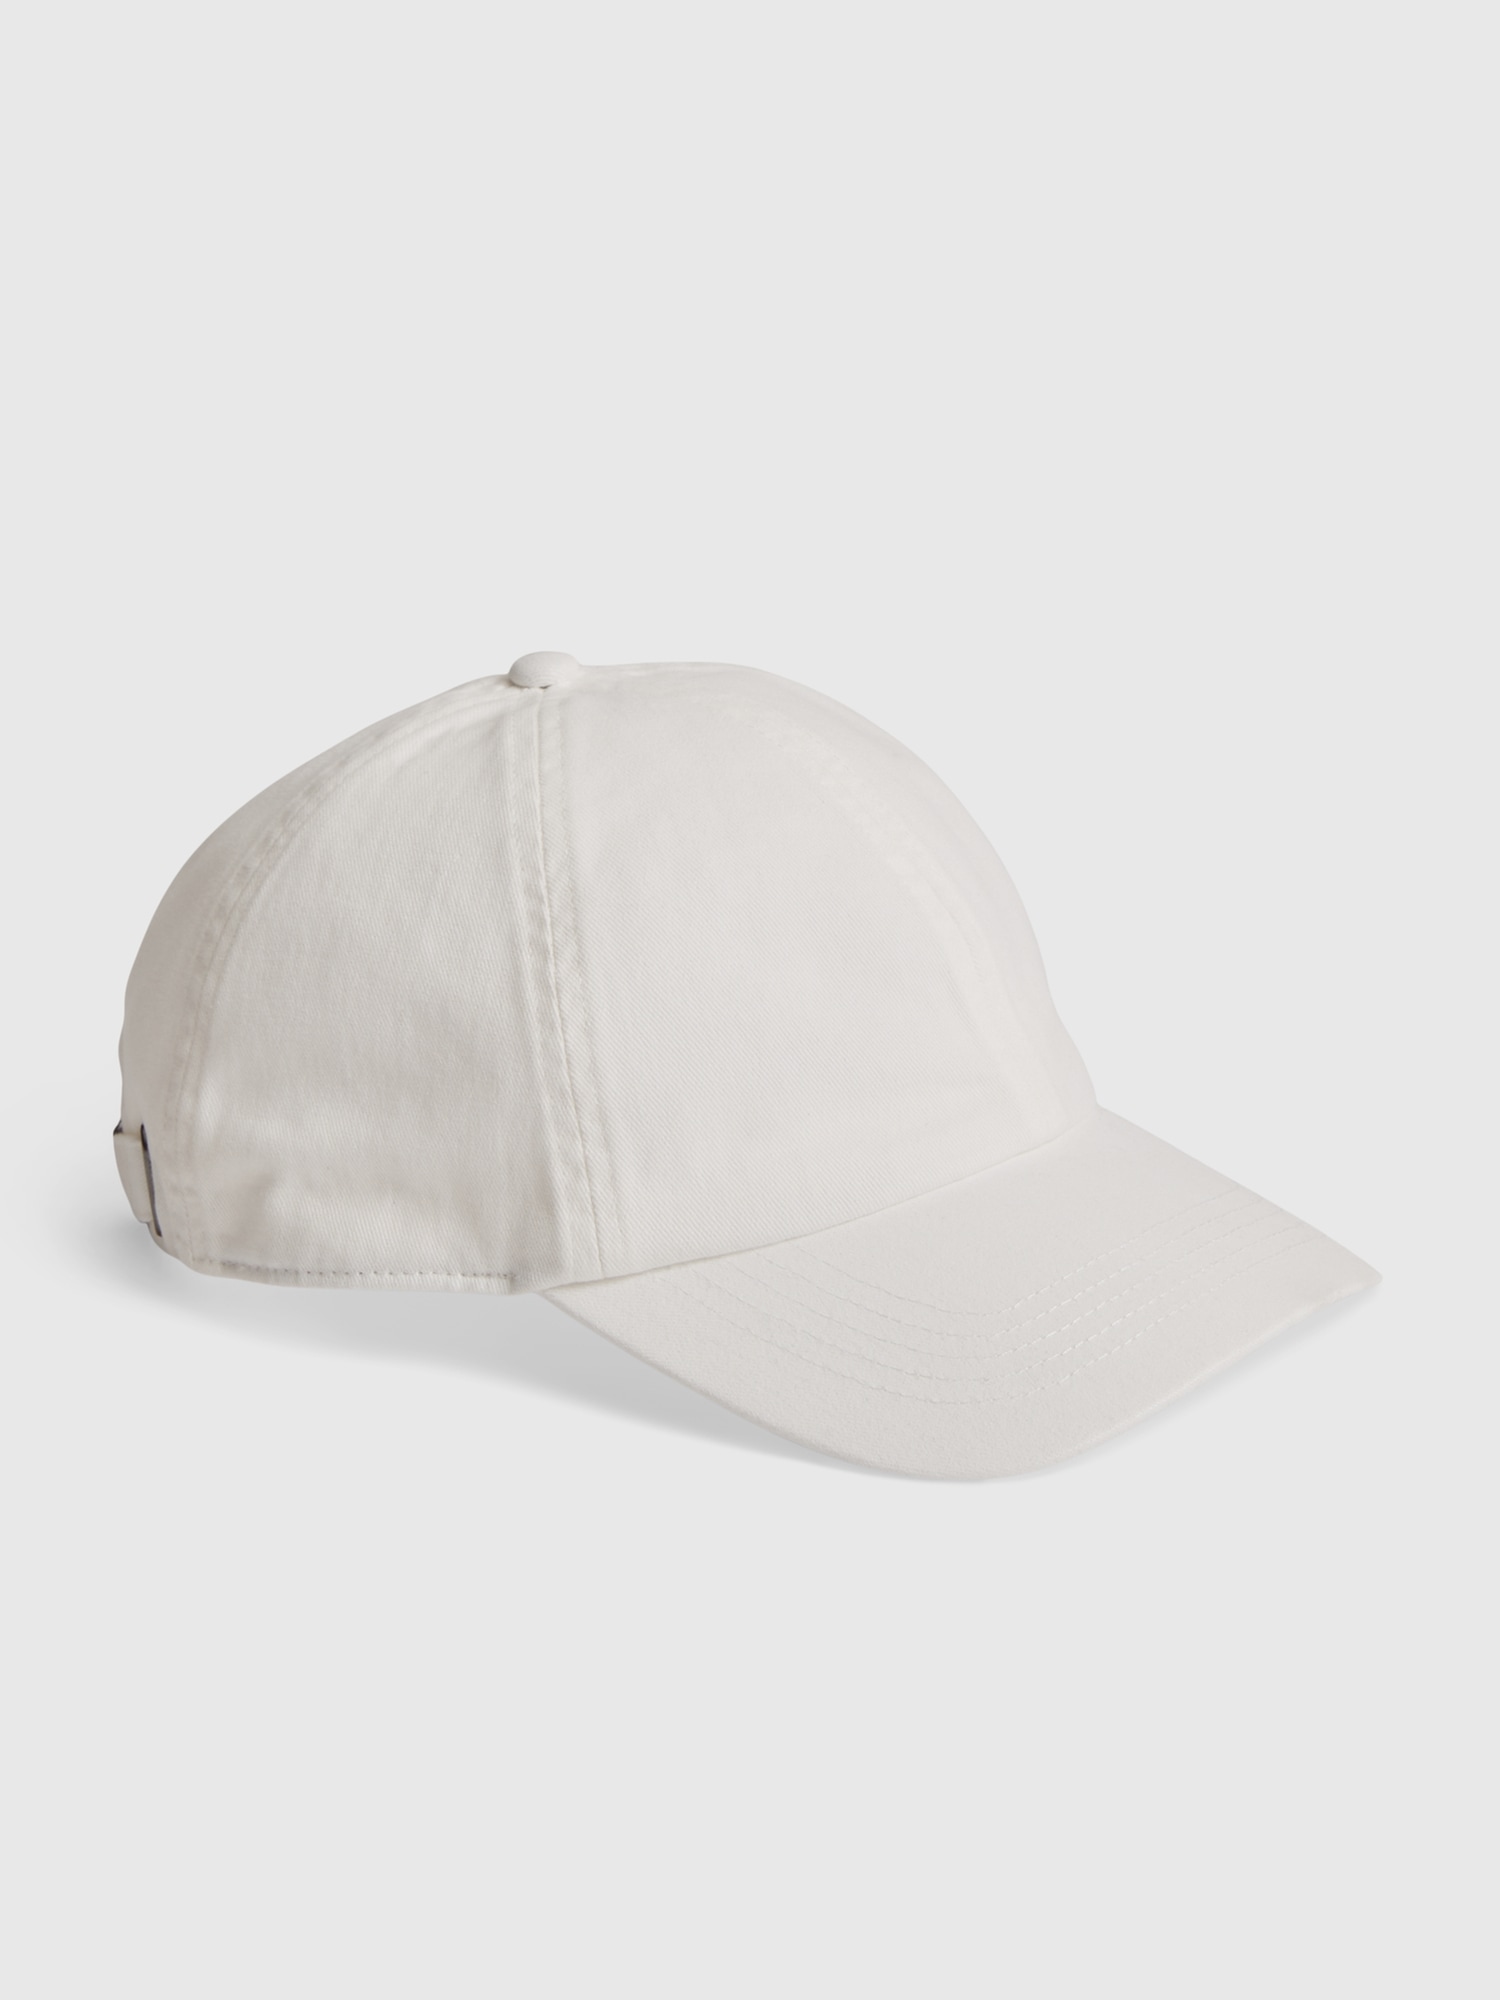 Men's 100% Cotton Hats